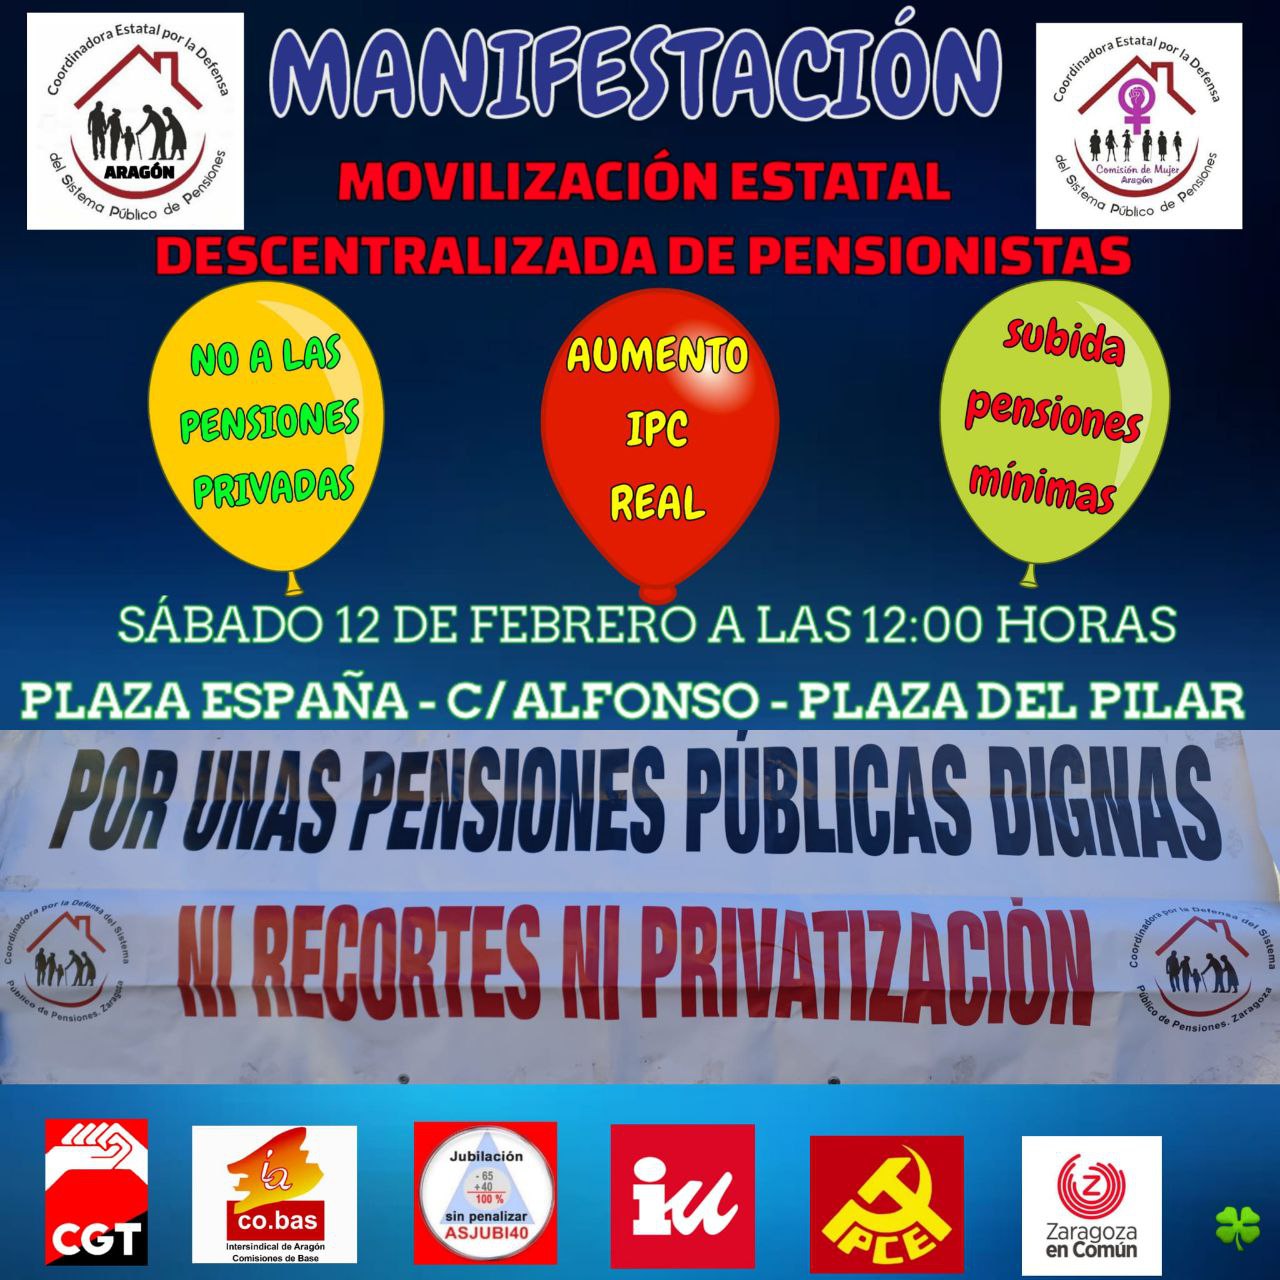 Manifestación estatal descentralizada de pensionistas